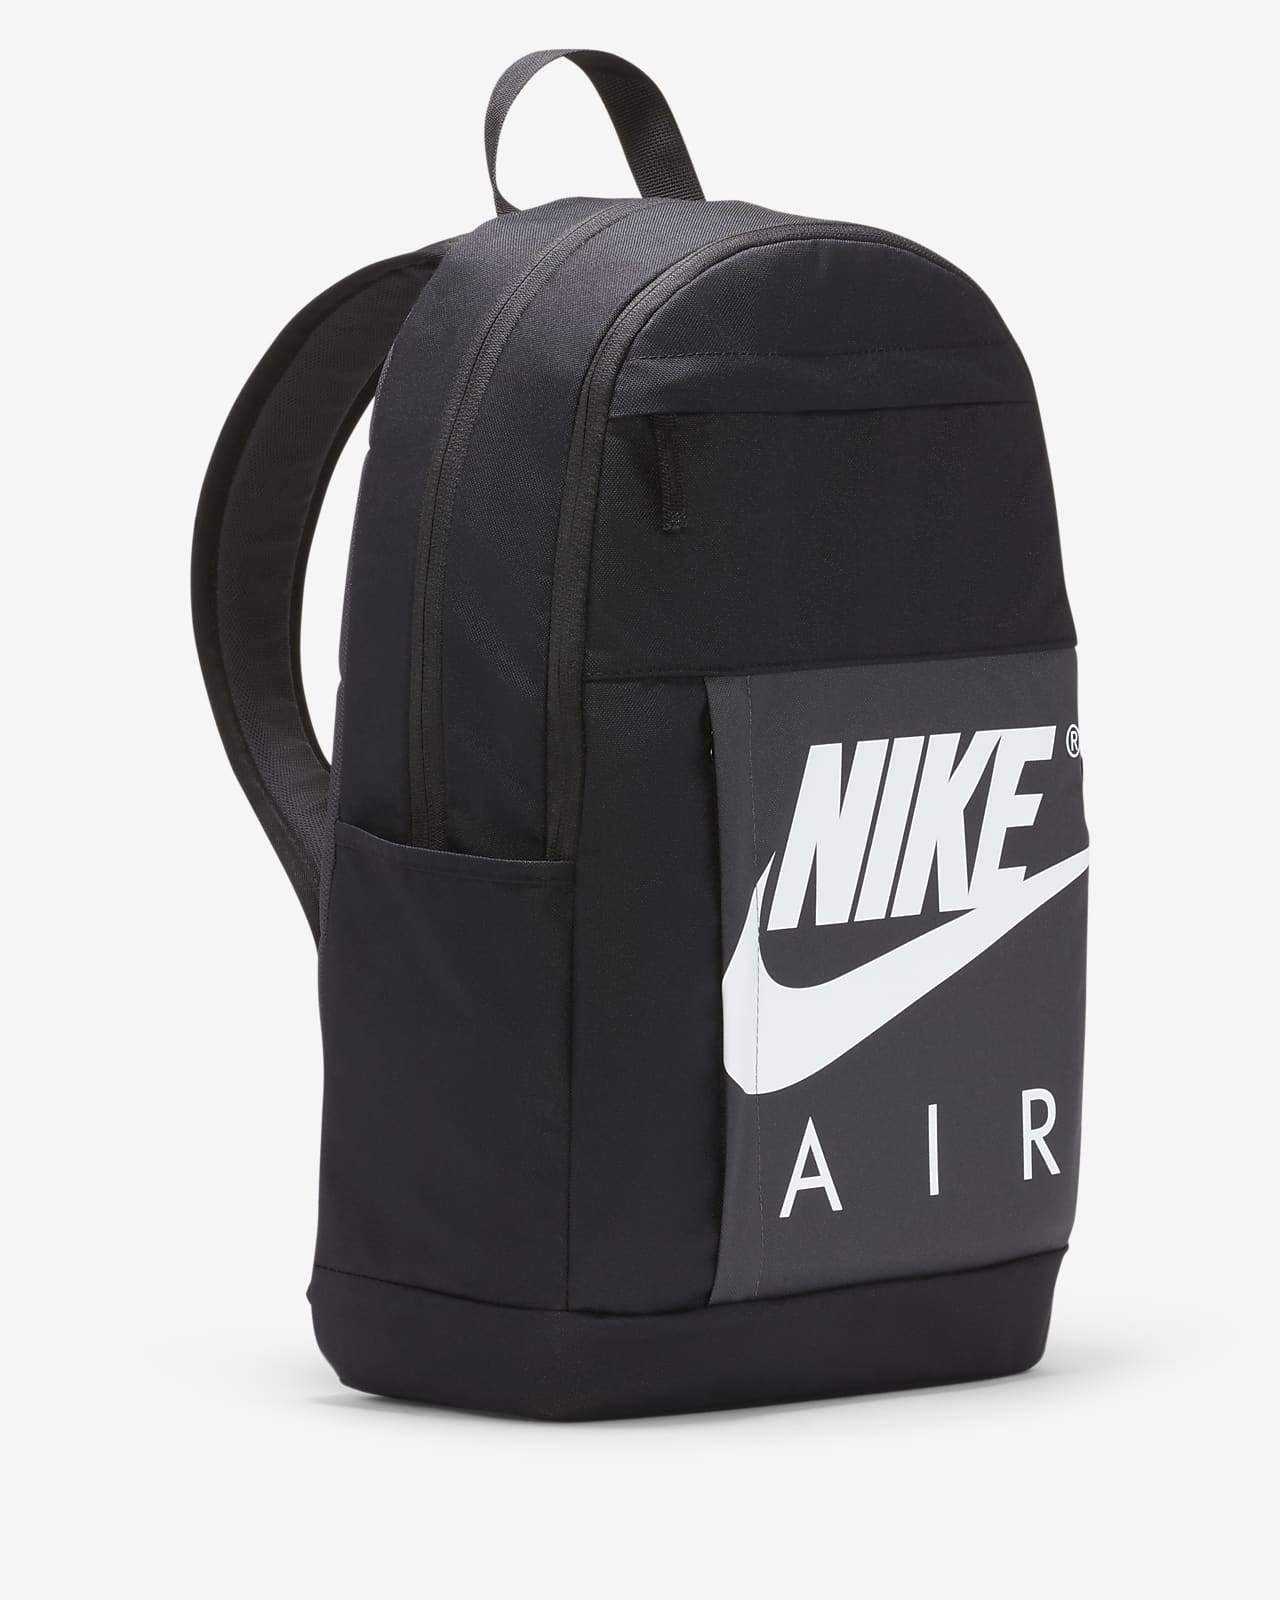 Indsprøjtning Uforudsete omstændigheder Spiritus Nike-rygsæk (21 L). Nike DK